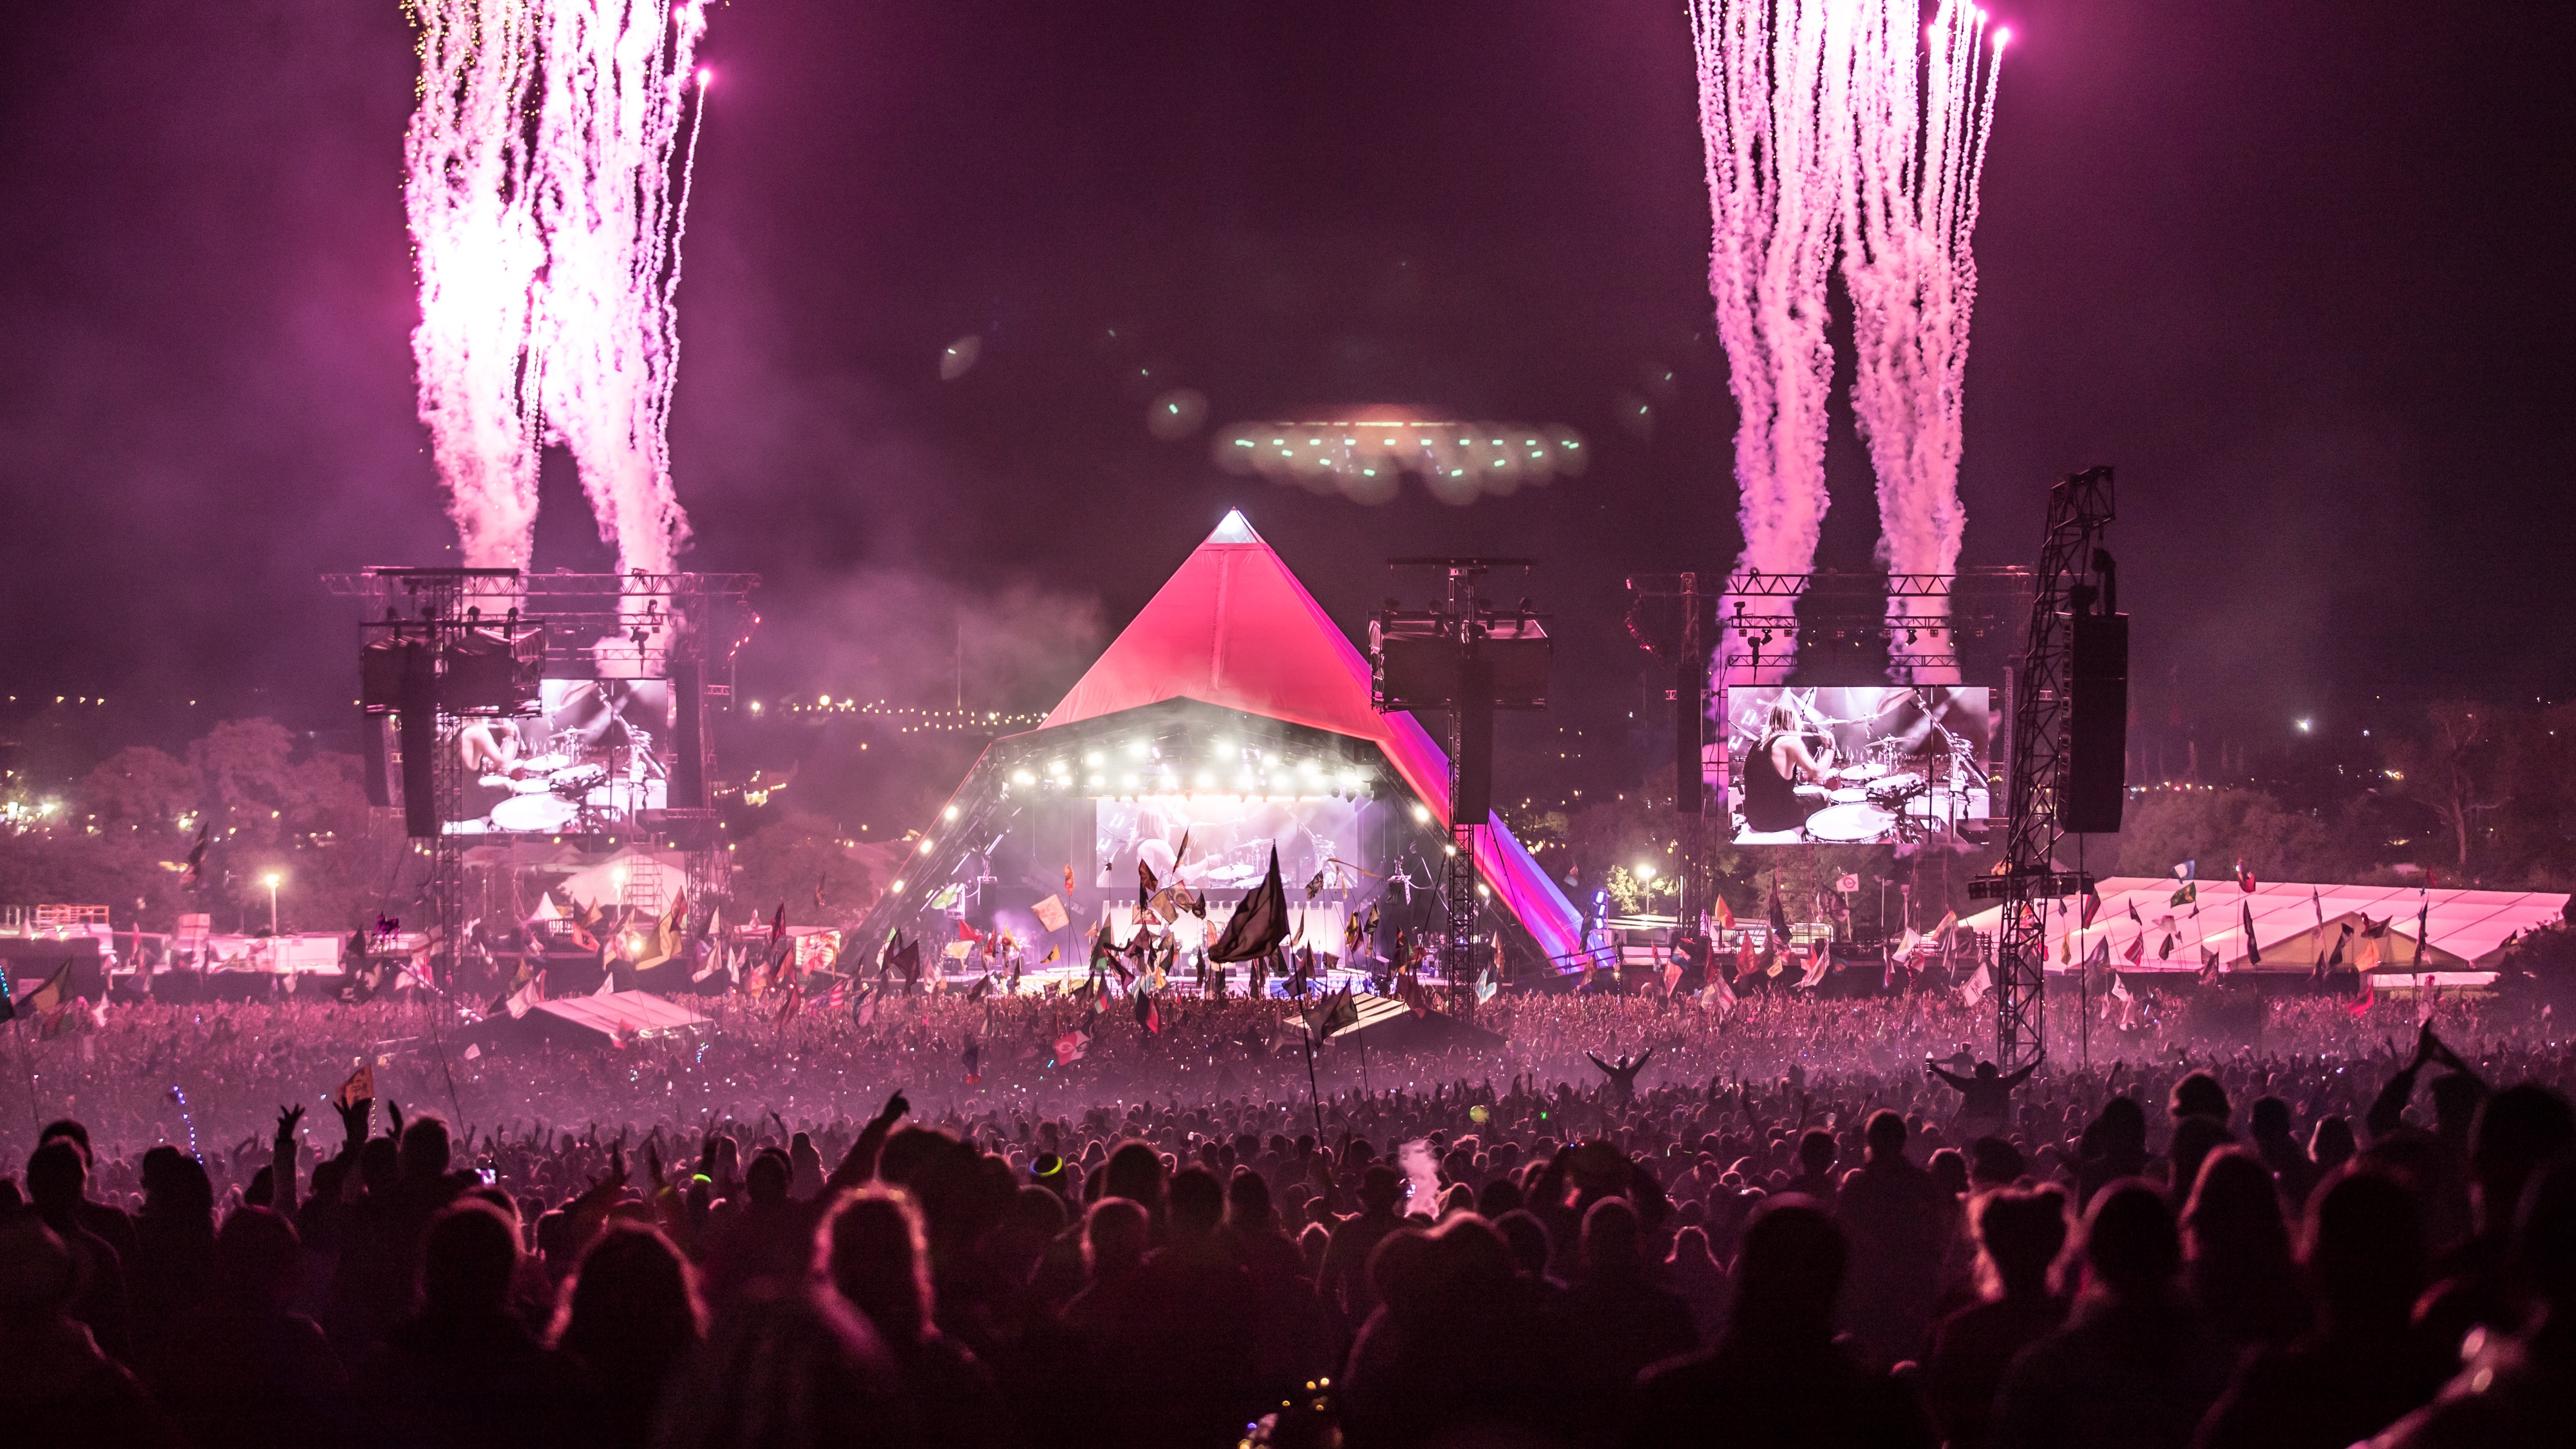 Ein Feuerwerk markiert das Ende des Auftritts der Foo Fighters' Pyramid Stage beim Glastonbury Festival in England.